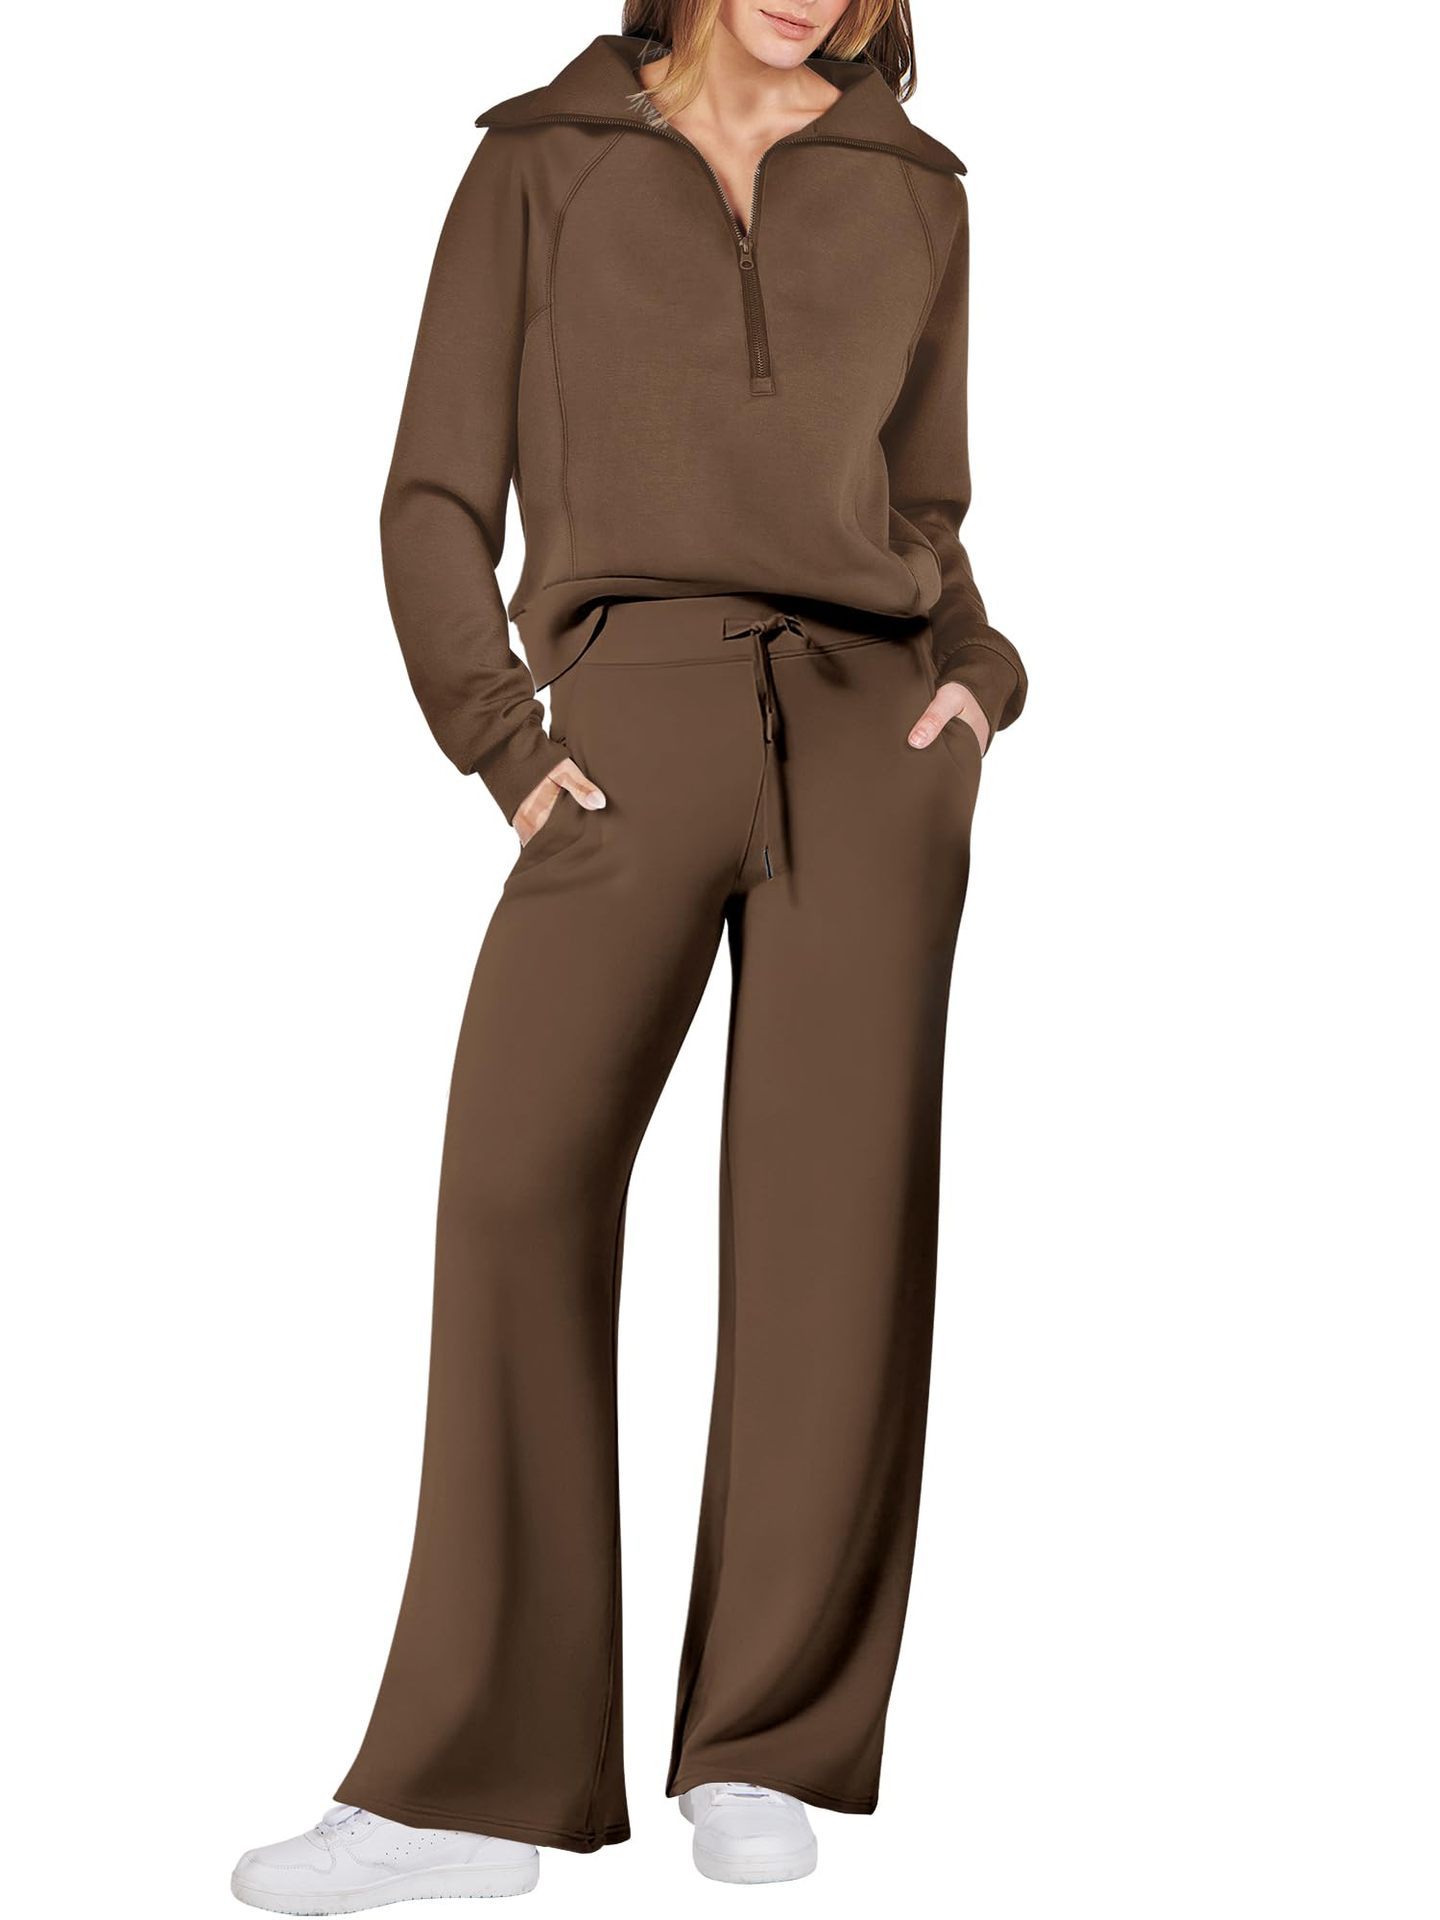 Women's Navy Collar Half Zip Suit (Buy 2 Free Shipping)